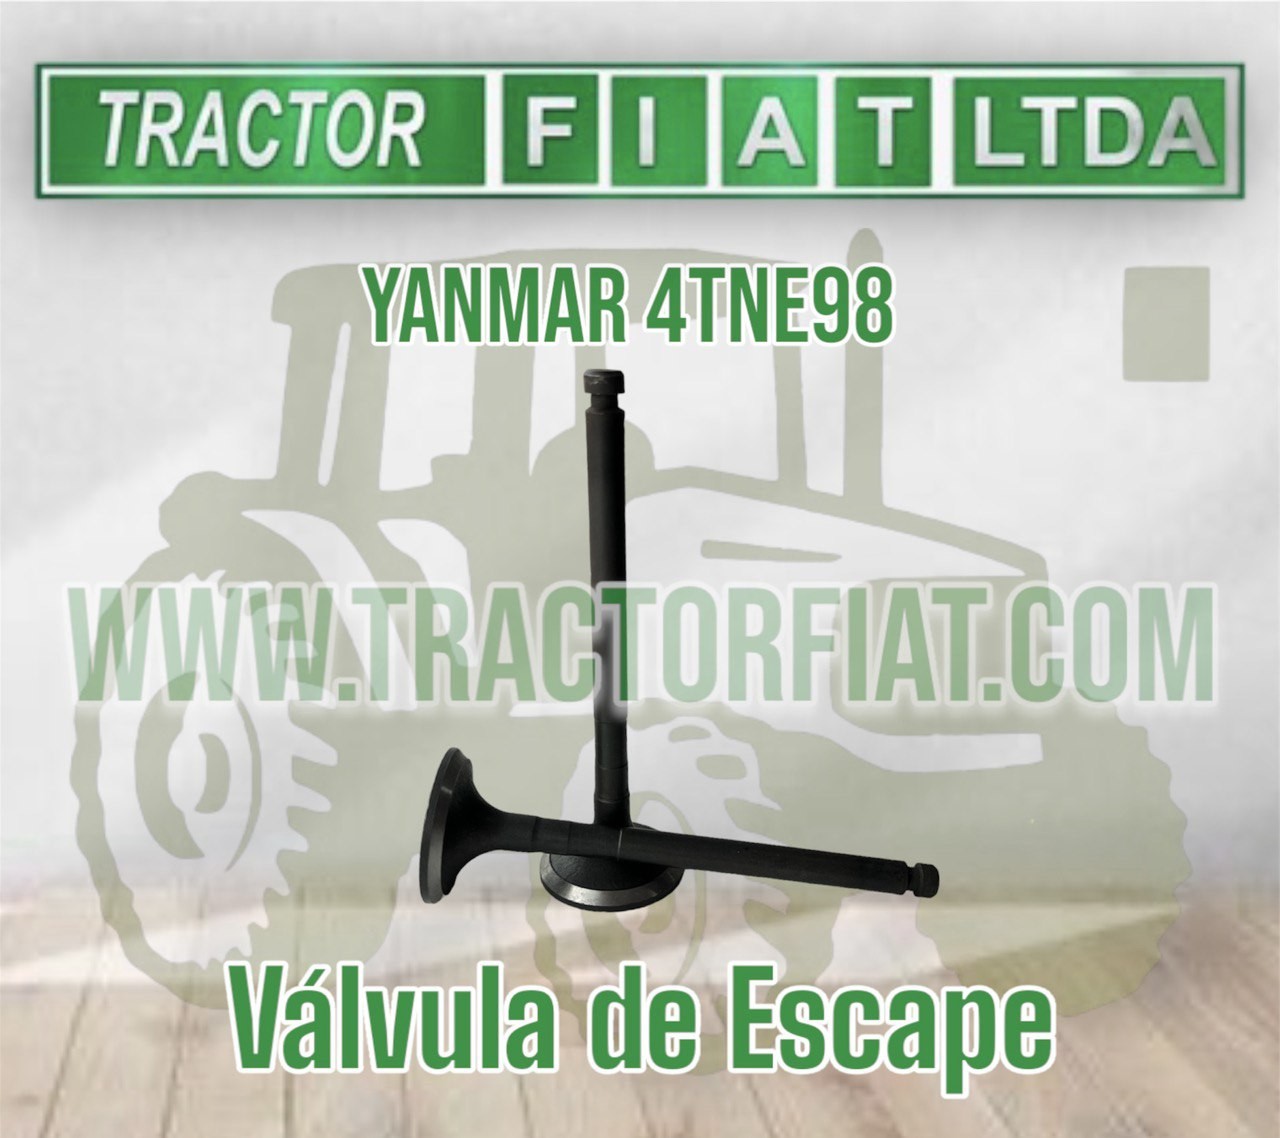 VALVULA DE ESCAPE - MOTOR YANMAR 4TNE98